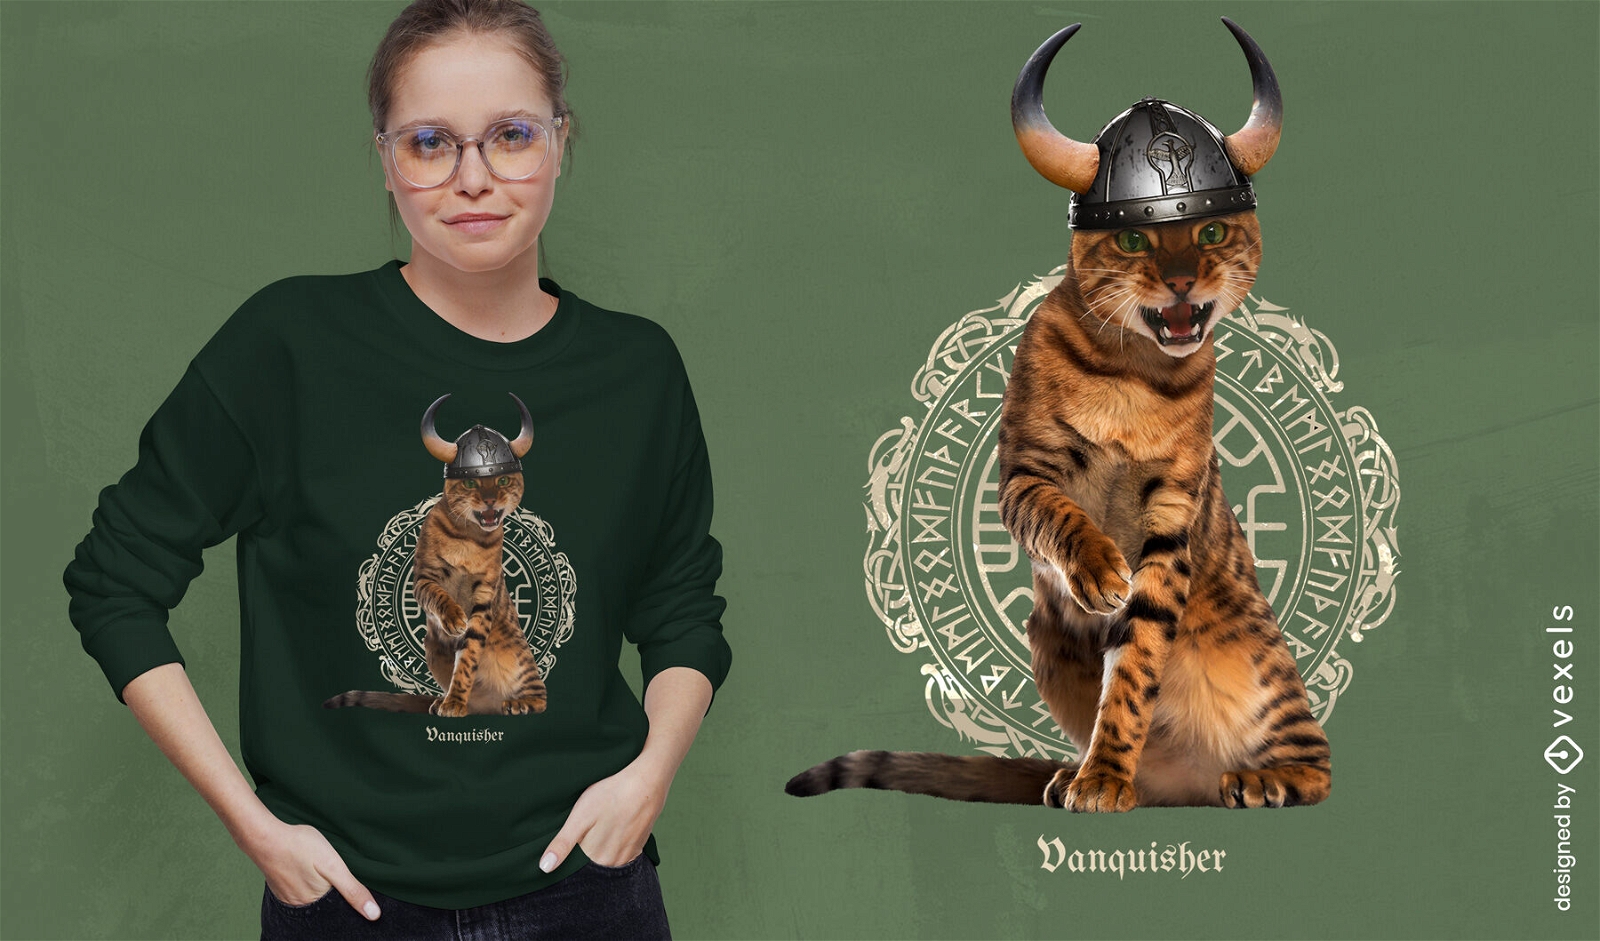 Dise?o de camiseta psd de gato vikingo